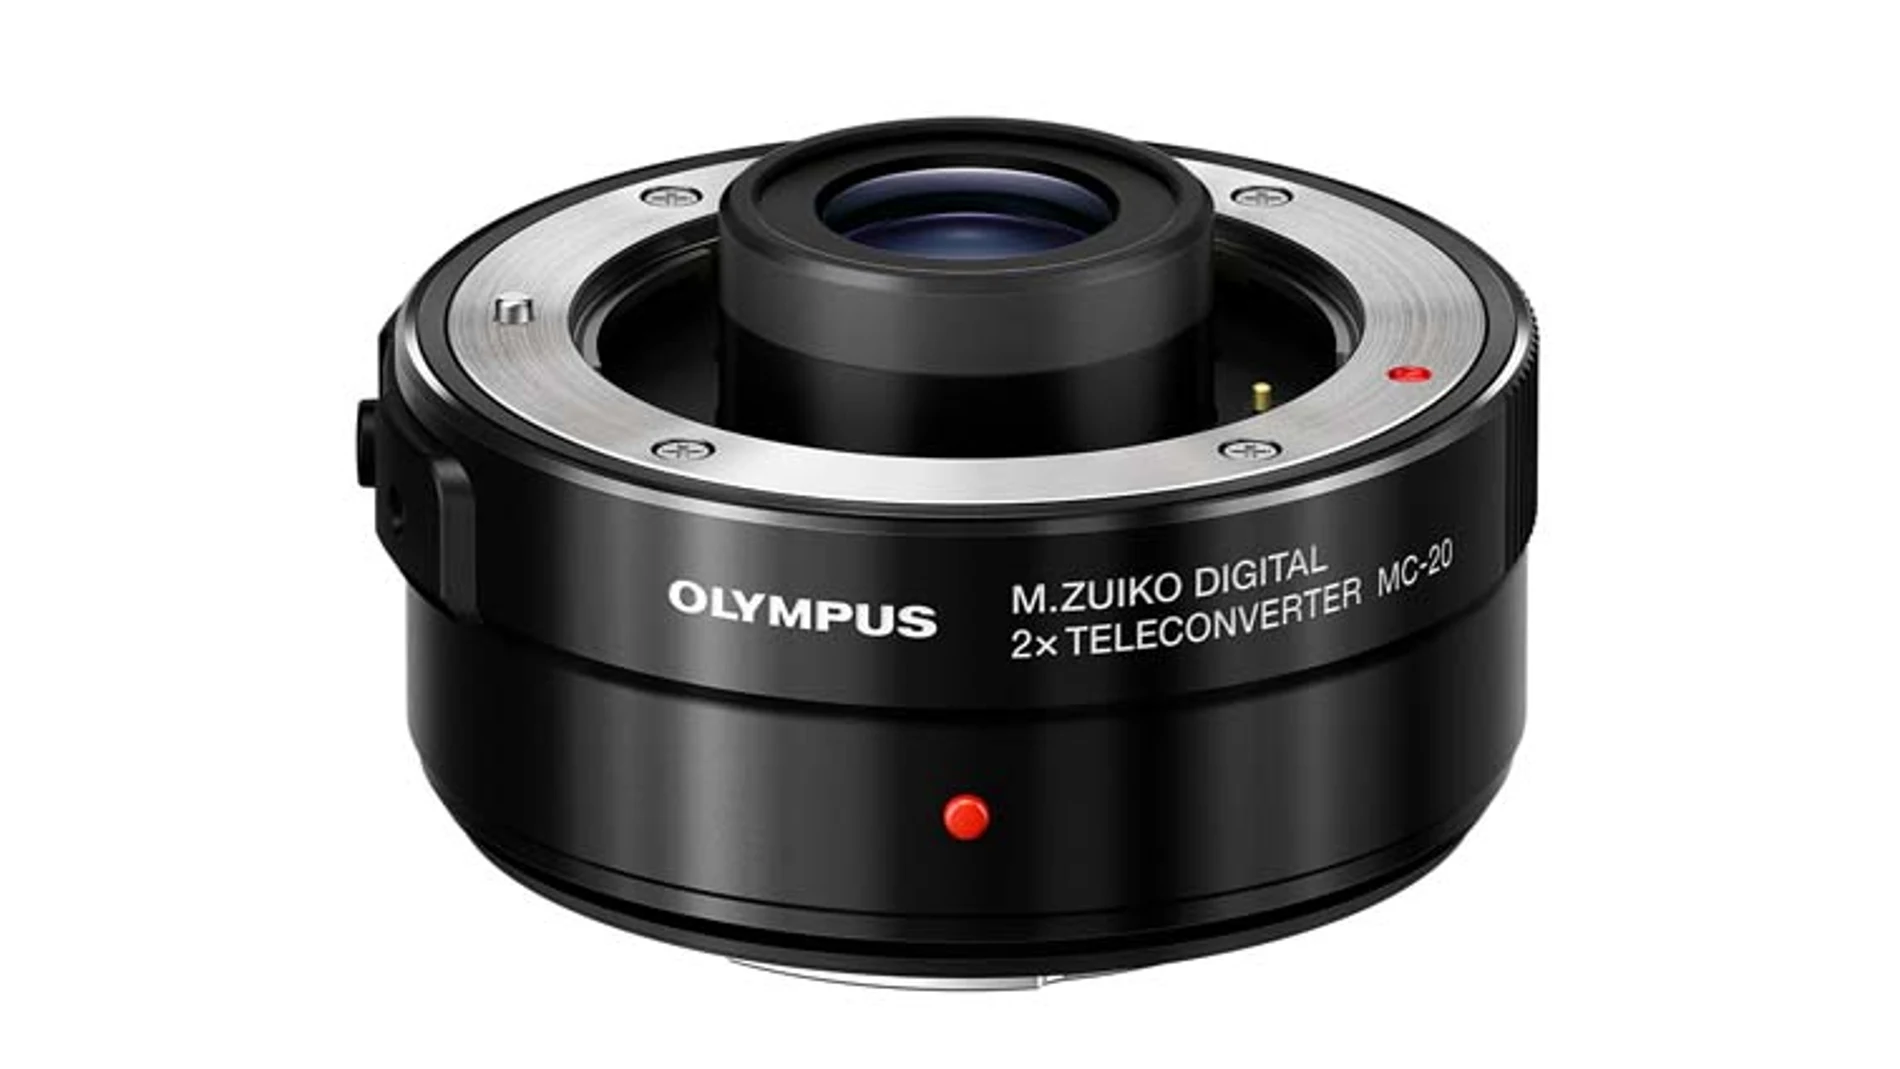 El teleconvertidor Olympus MC-20 duplica la distancia focal y mantiene la calidad de imagen.